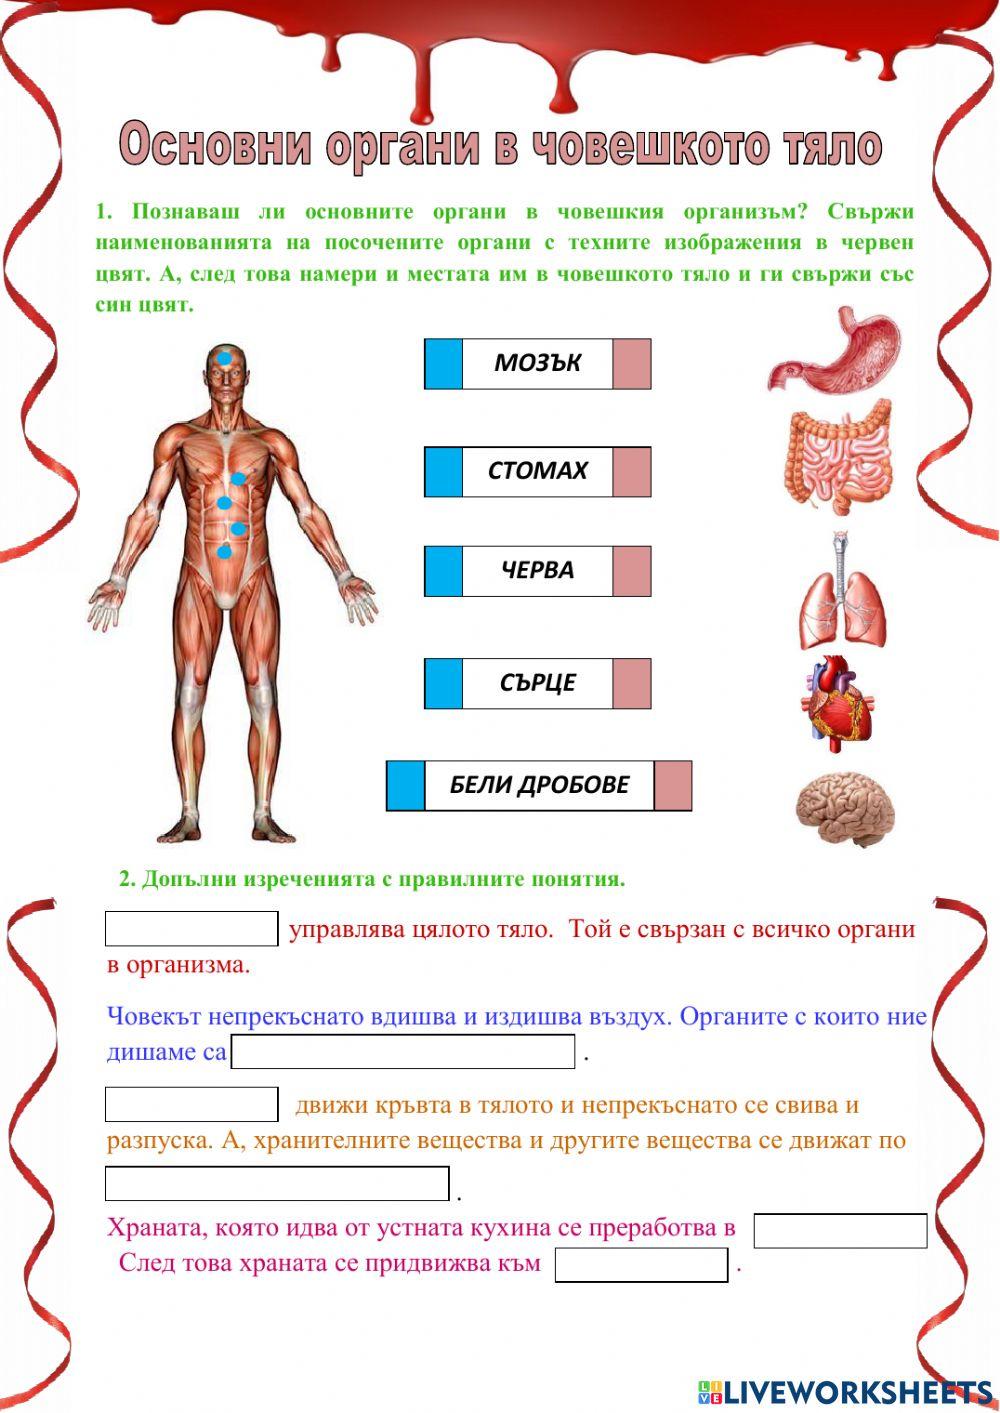 Основни органи в човешкото тяло